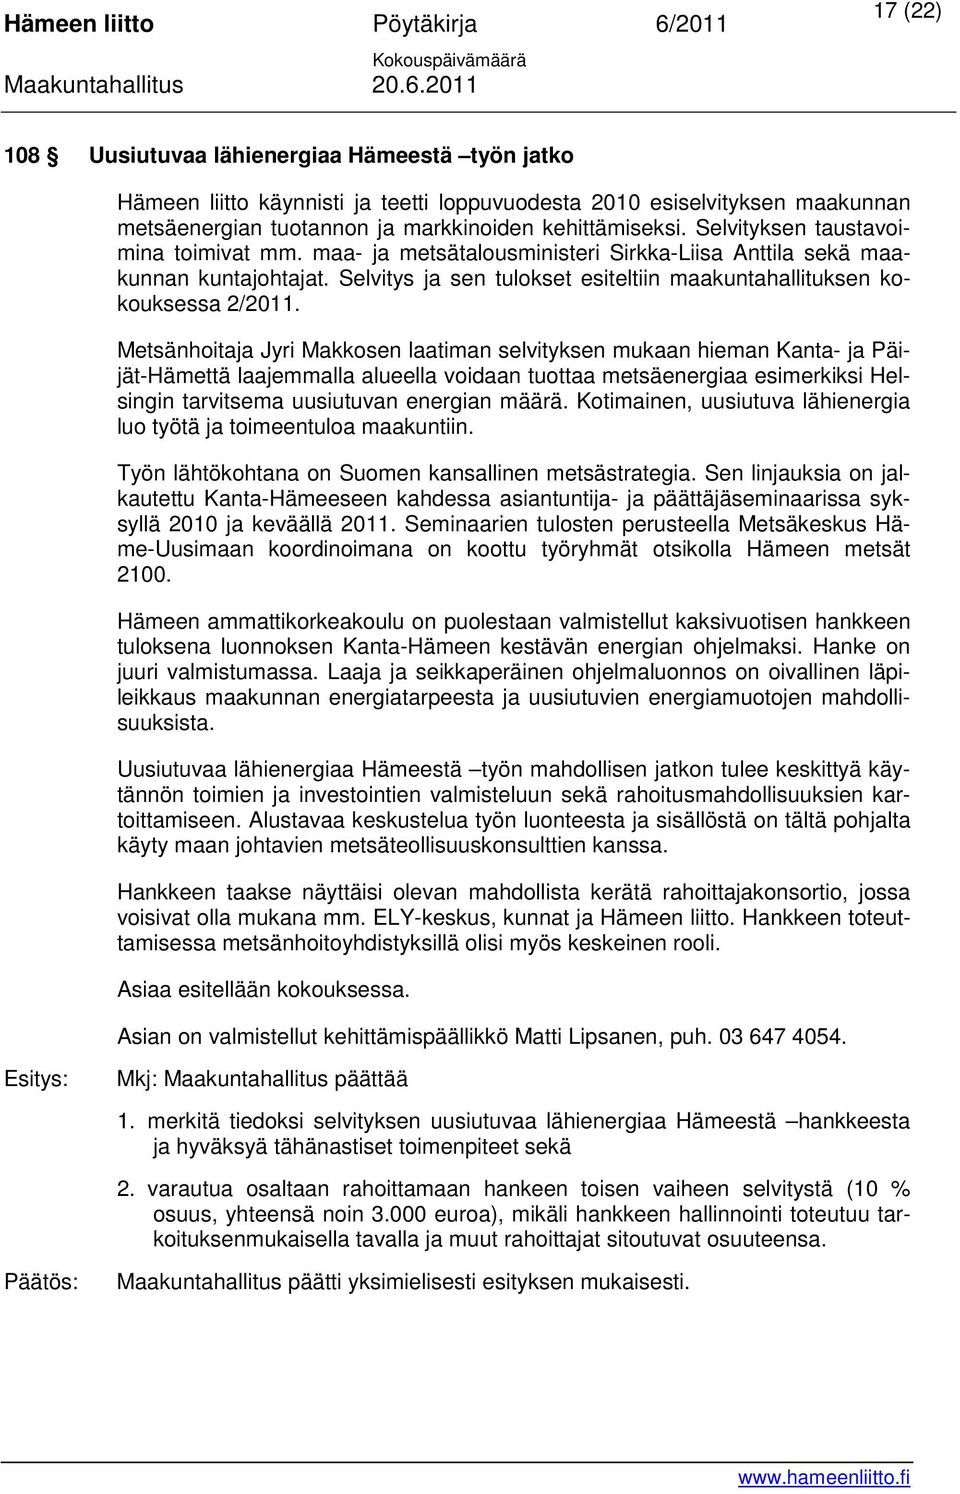 Metsänhoitaja Jyri Makkosen laatiman selvityksen mukaan hieman Kanta- ja Päijät-Hämettä laajemmalla alueella voidaan tuottaa metsäenergiaa esimerkiksi Helsingin tarvitsema uusiutuvan energian määrä.